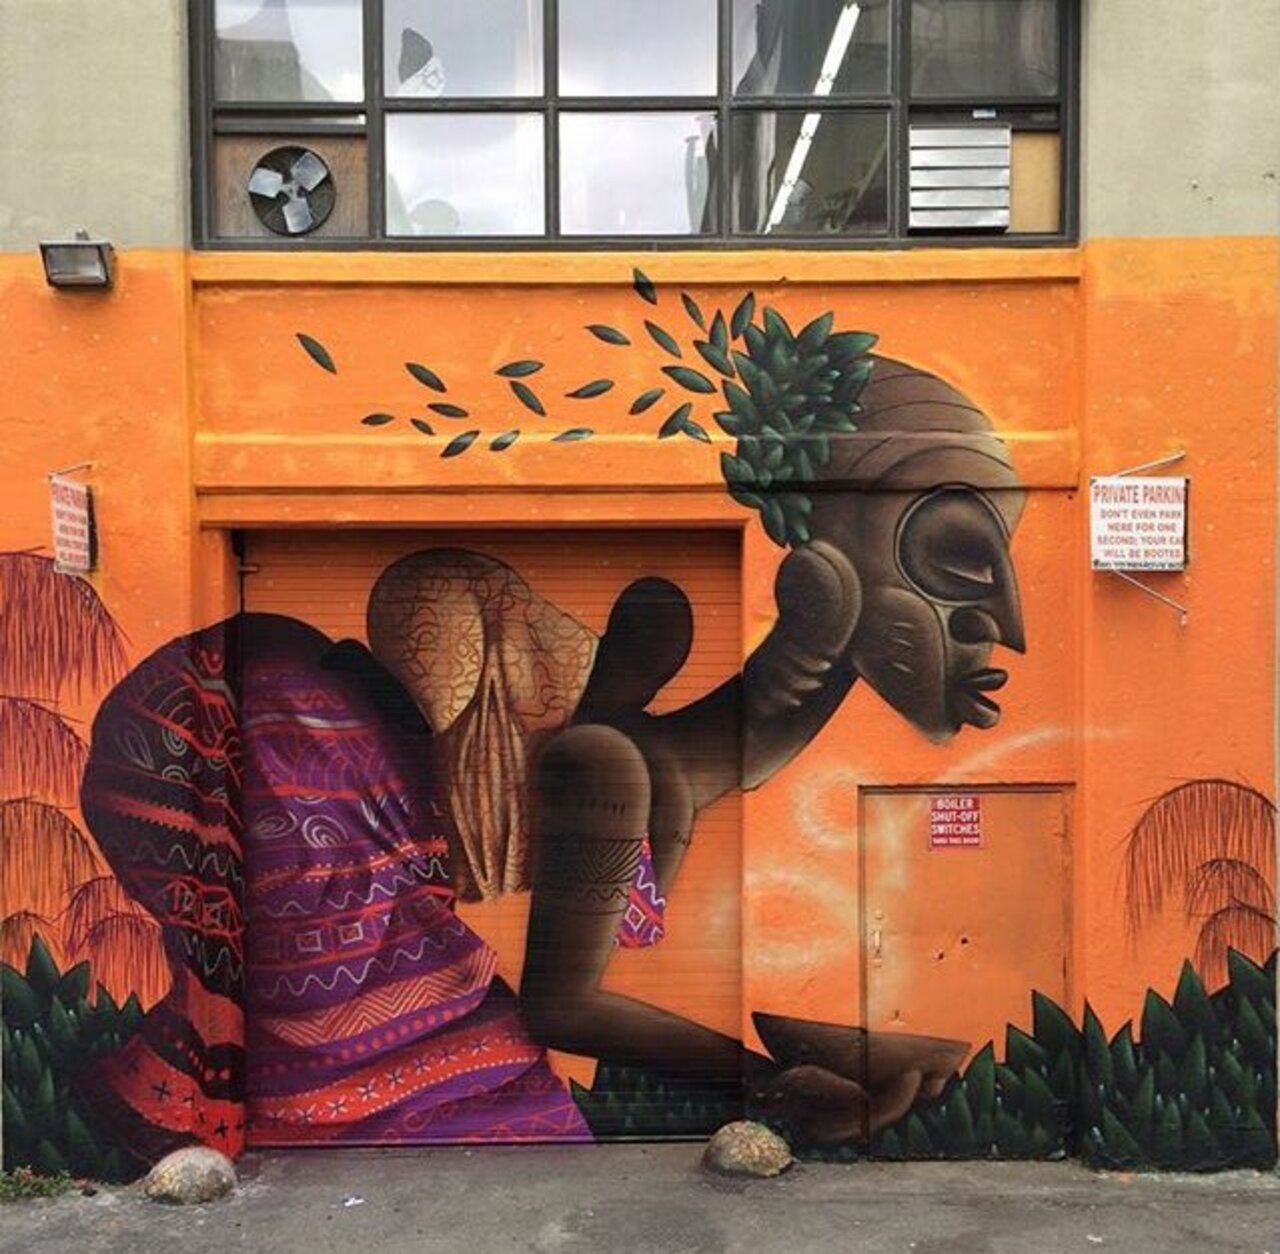 New Street Art by Alexandre Keto in NYC 

#art #graffiti #mural #streetart https://t.co/bIEjCyzLCW